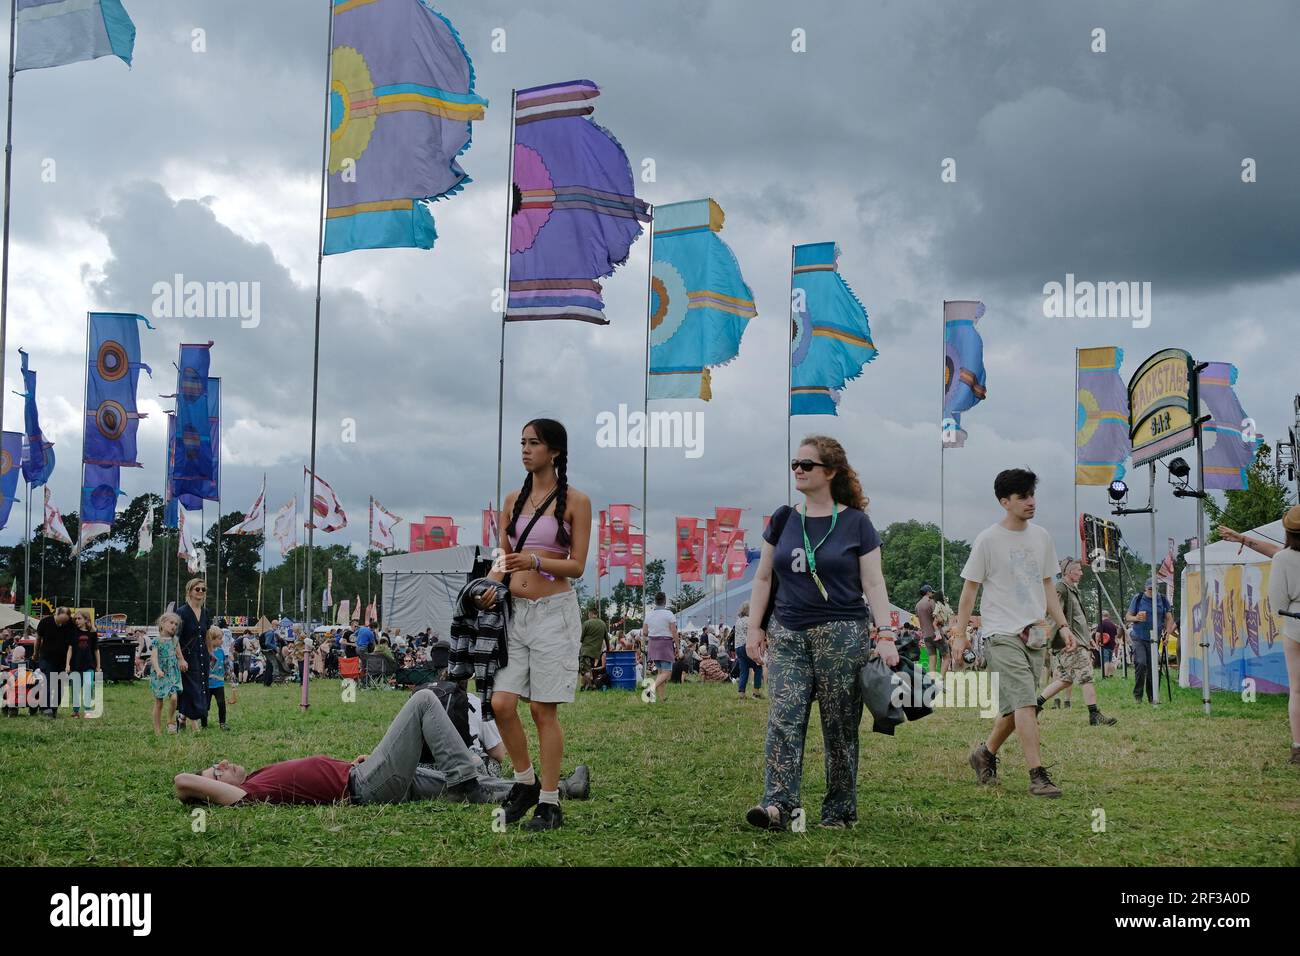 Festivalbesucher vor den womad-Flaggen an einem windigen, bedeckten und bewölkten Tag. Stockfoto